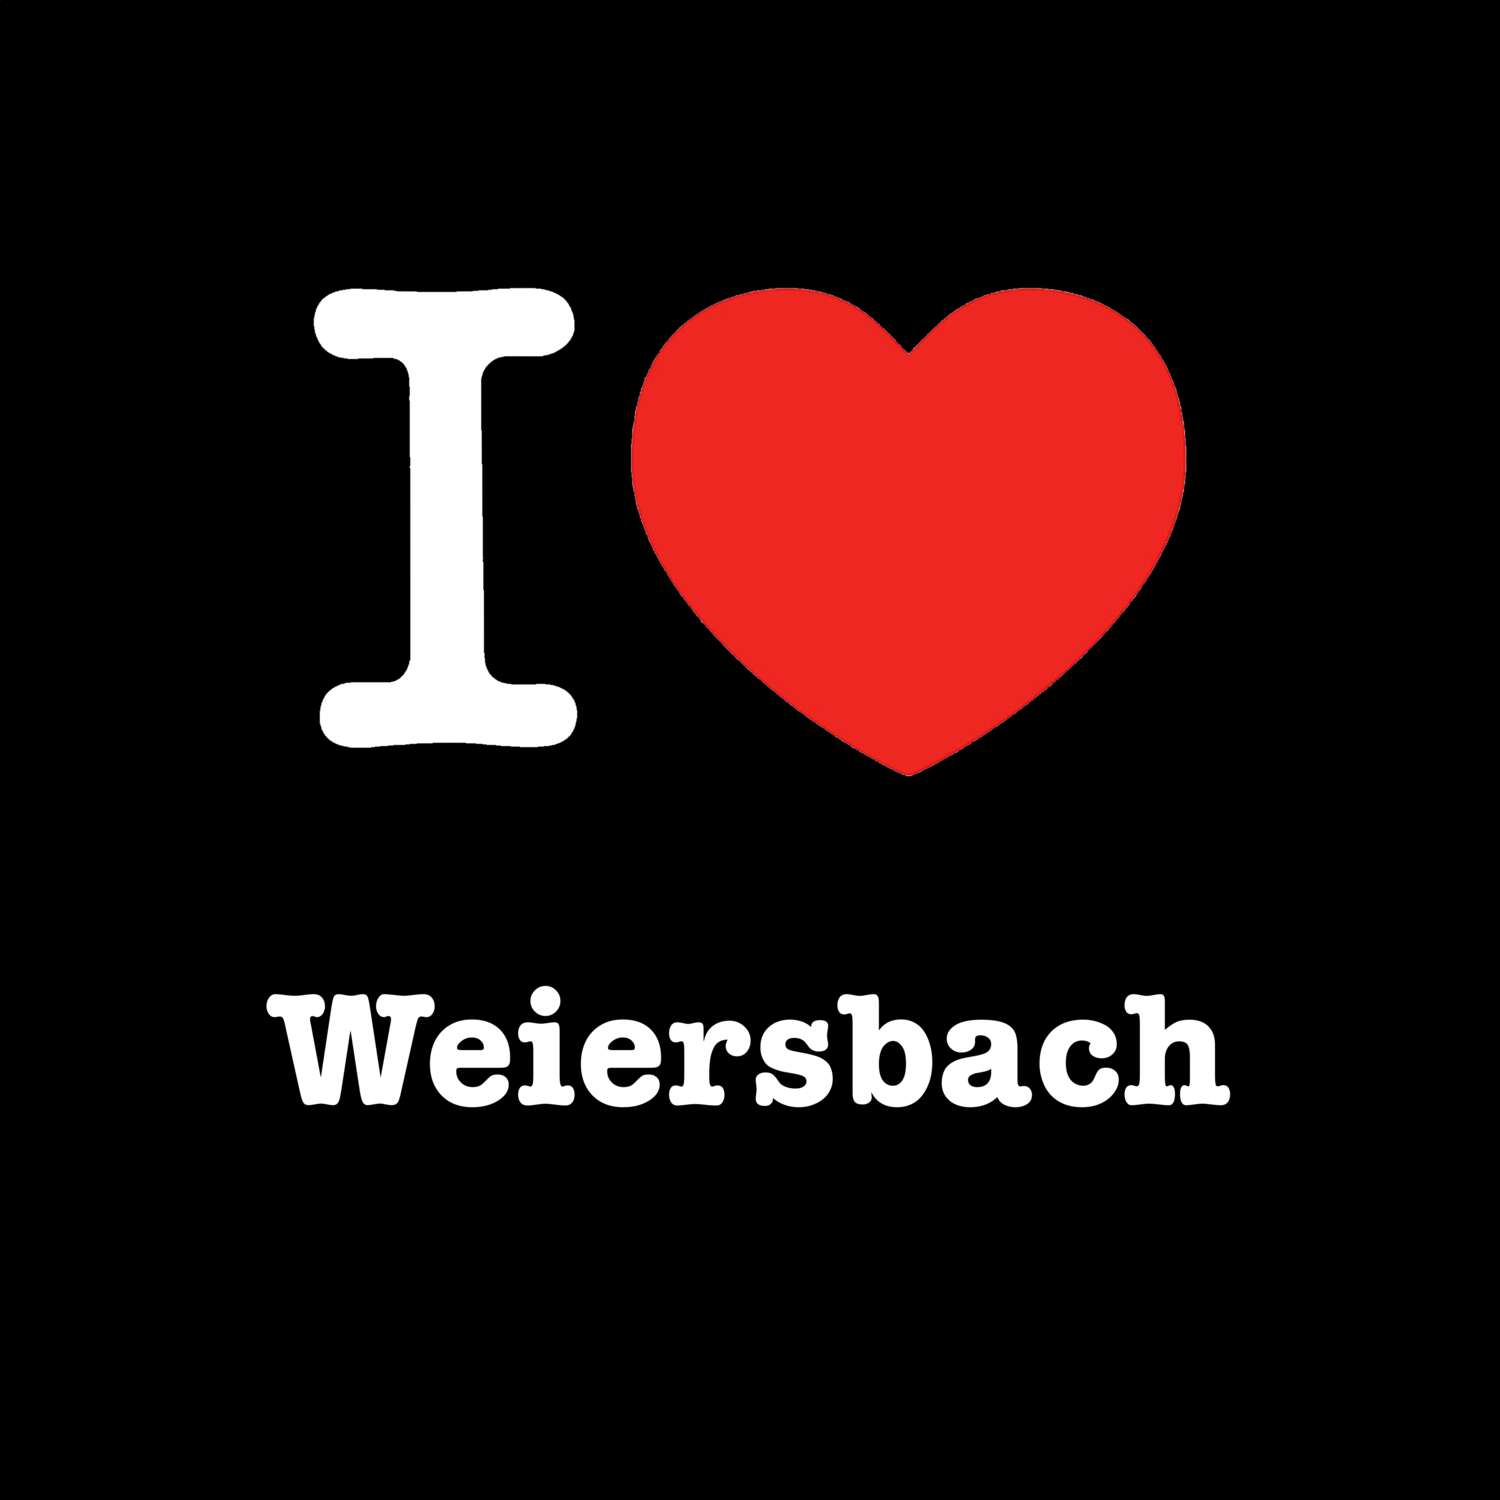 Weiersbach T-Shirt »I love«